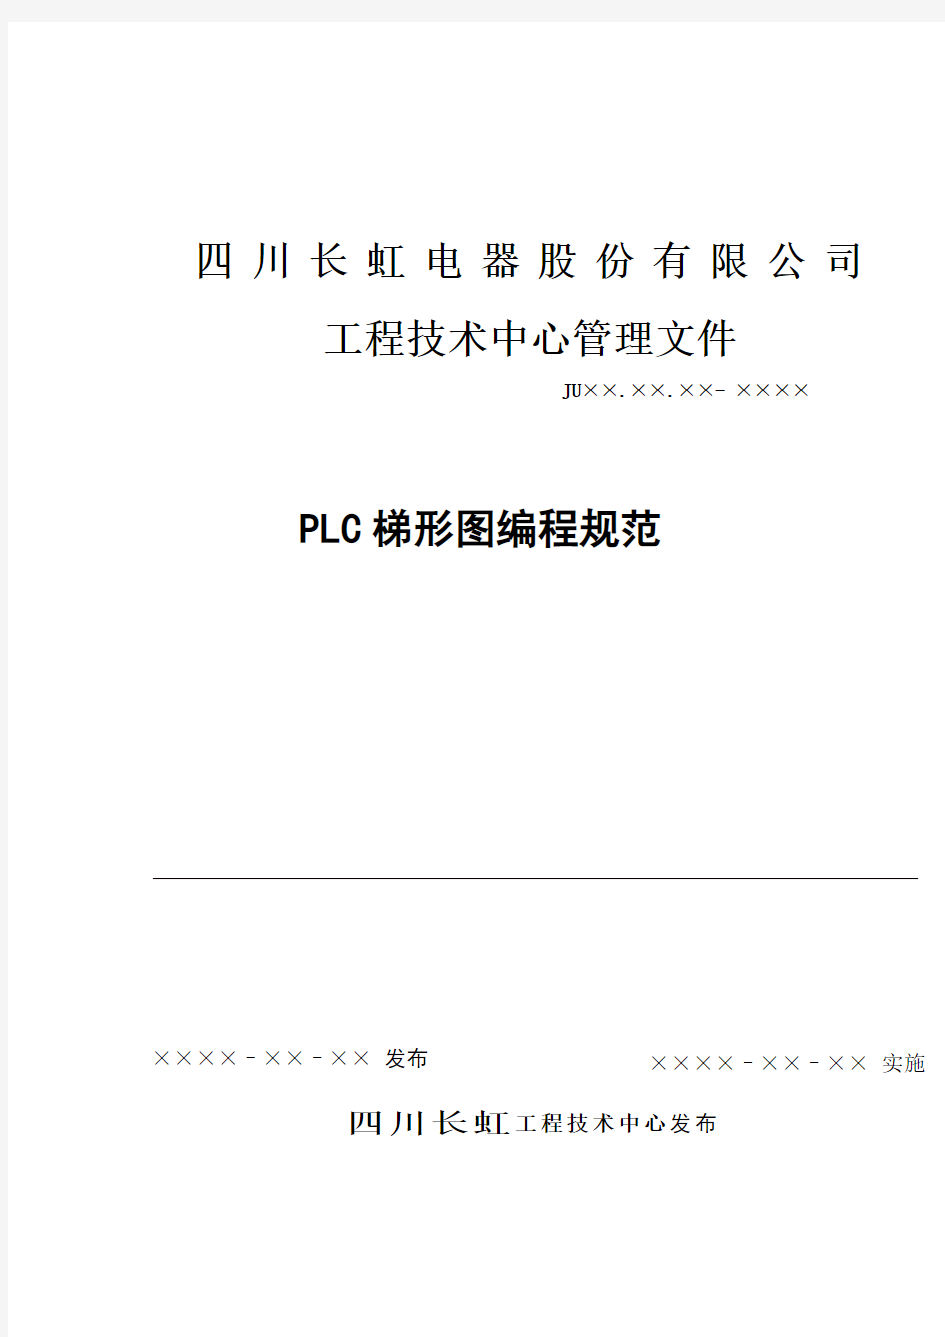 PLC梯形图编程规范书